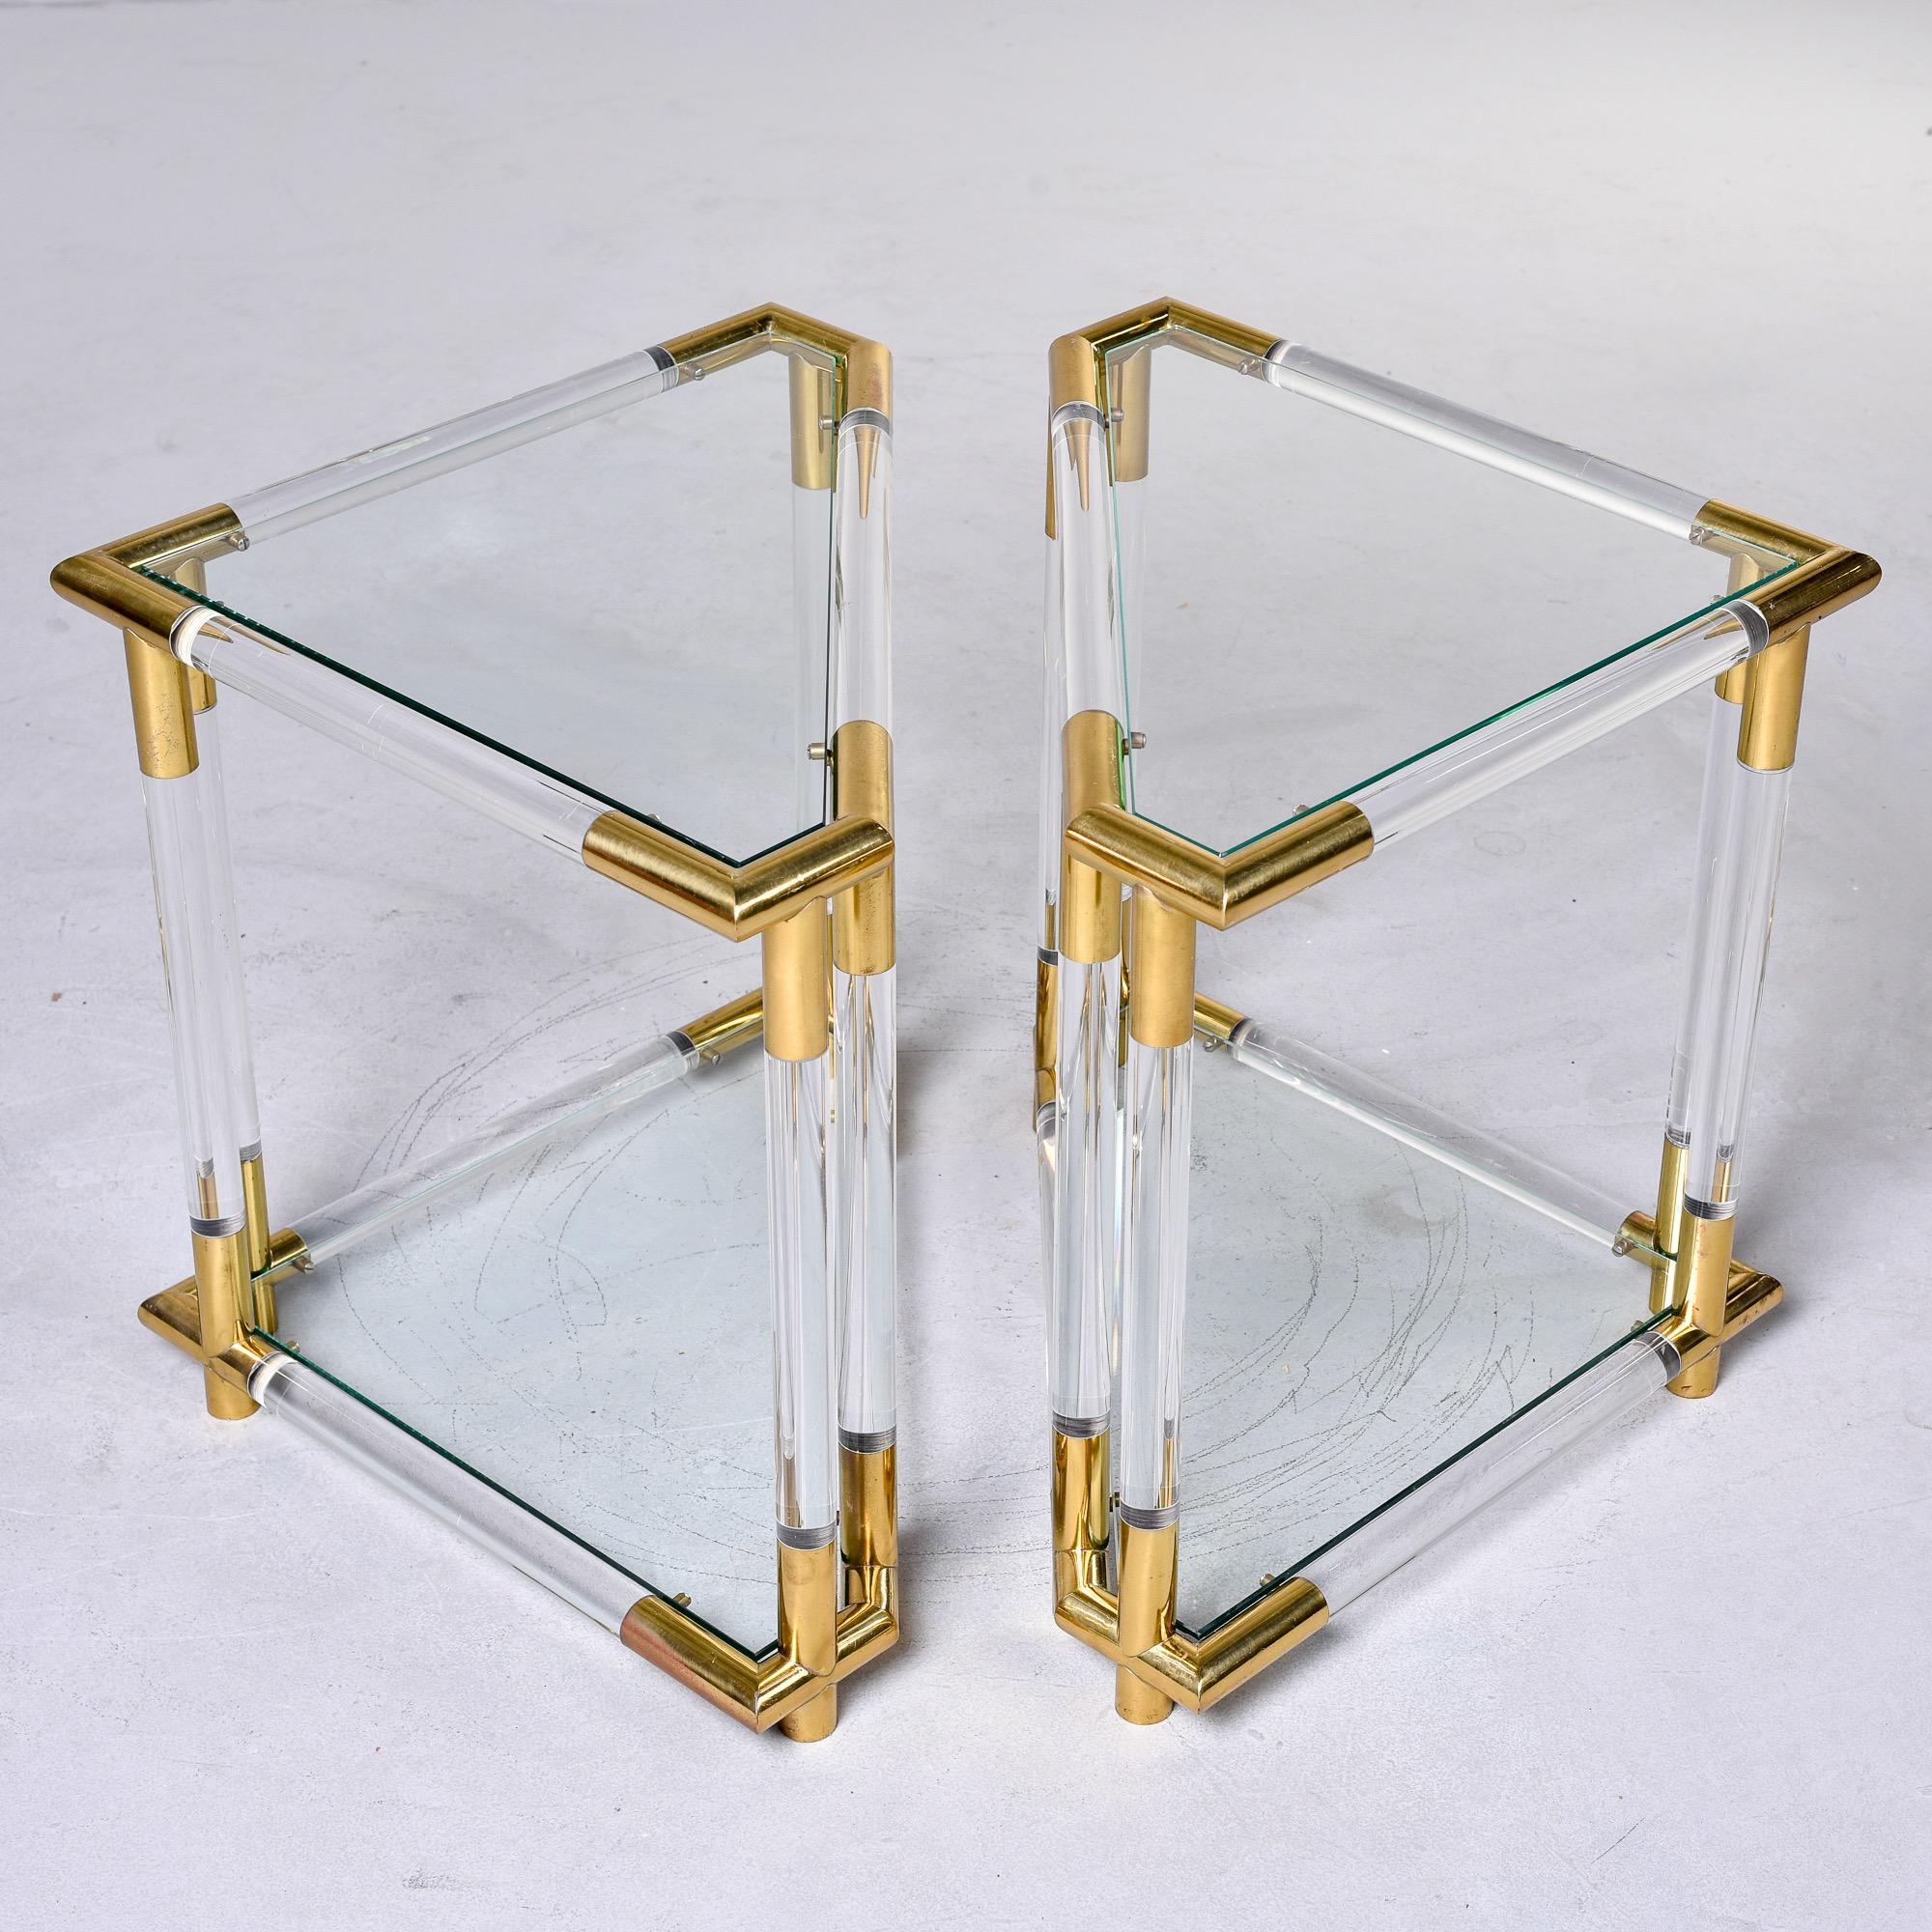 Trouvée en Italie, cette paire de tables d'appoint triangulaires datant des années 1970 présente des cadres en lucite et en laiton avec des plateaux en verre et des étagères inférieures. Très bon état vintage avec de légères usures de surface